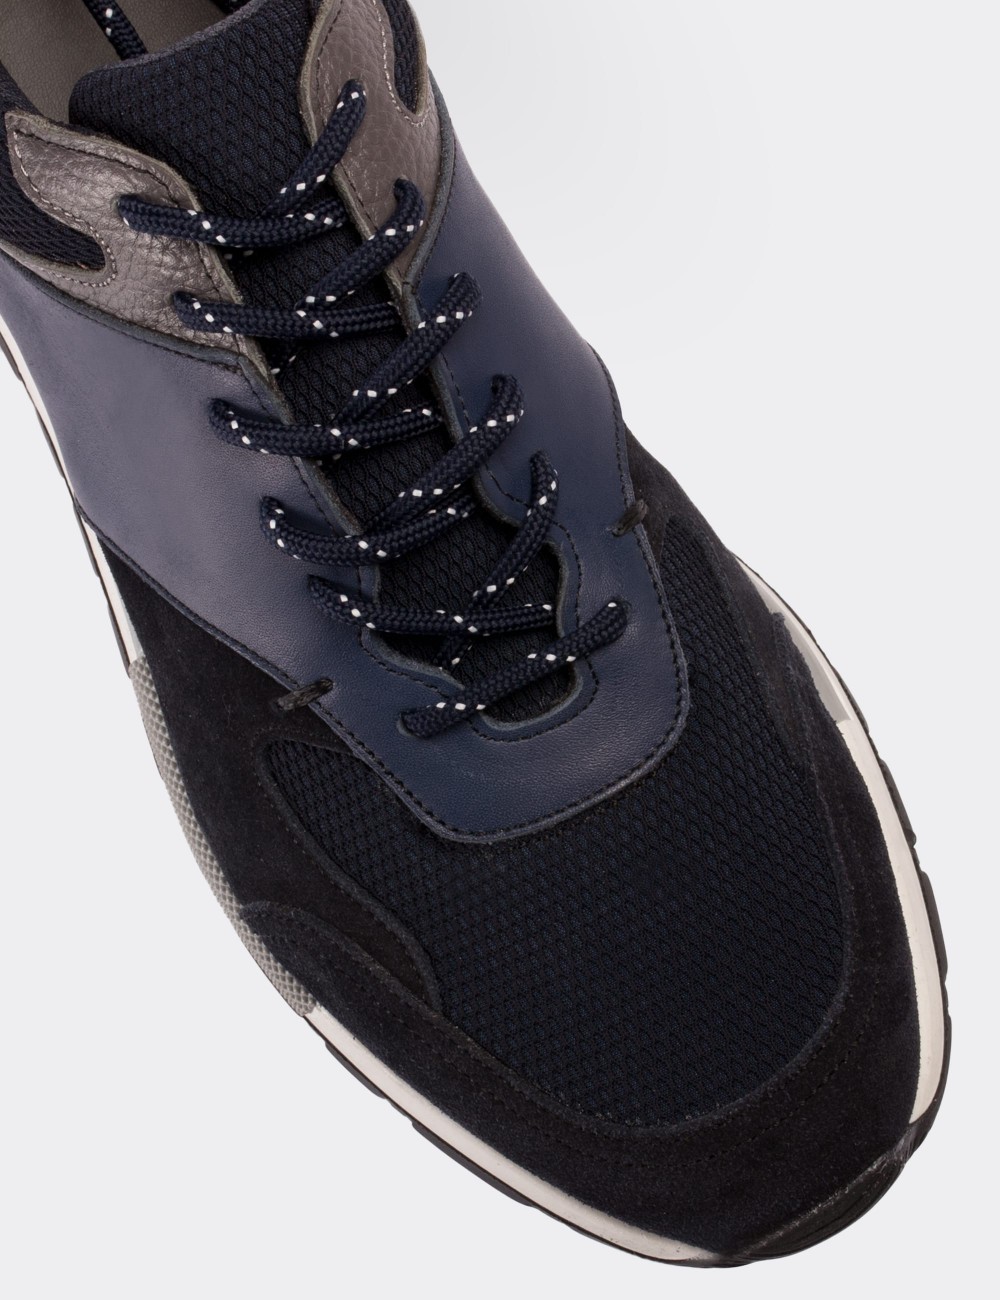 Hakiki Süet Lacivert Sneaker Erkek Ayakkabı - 01718MLCVT01